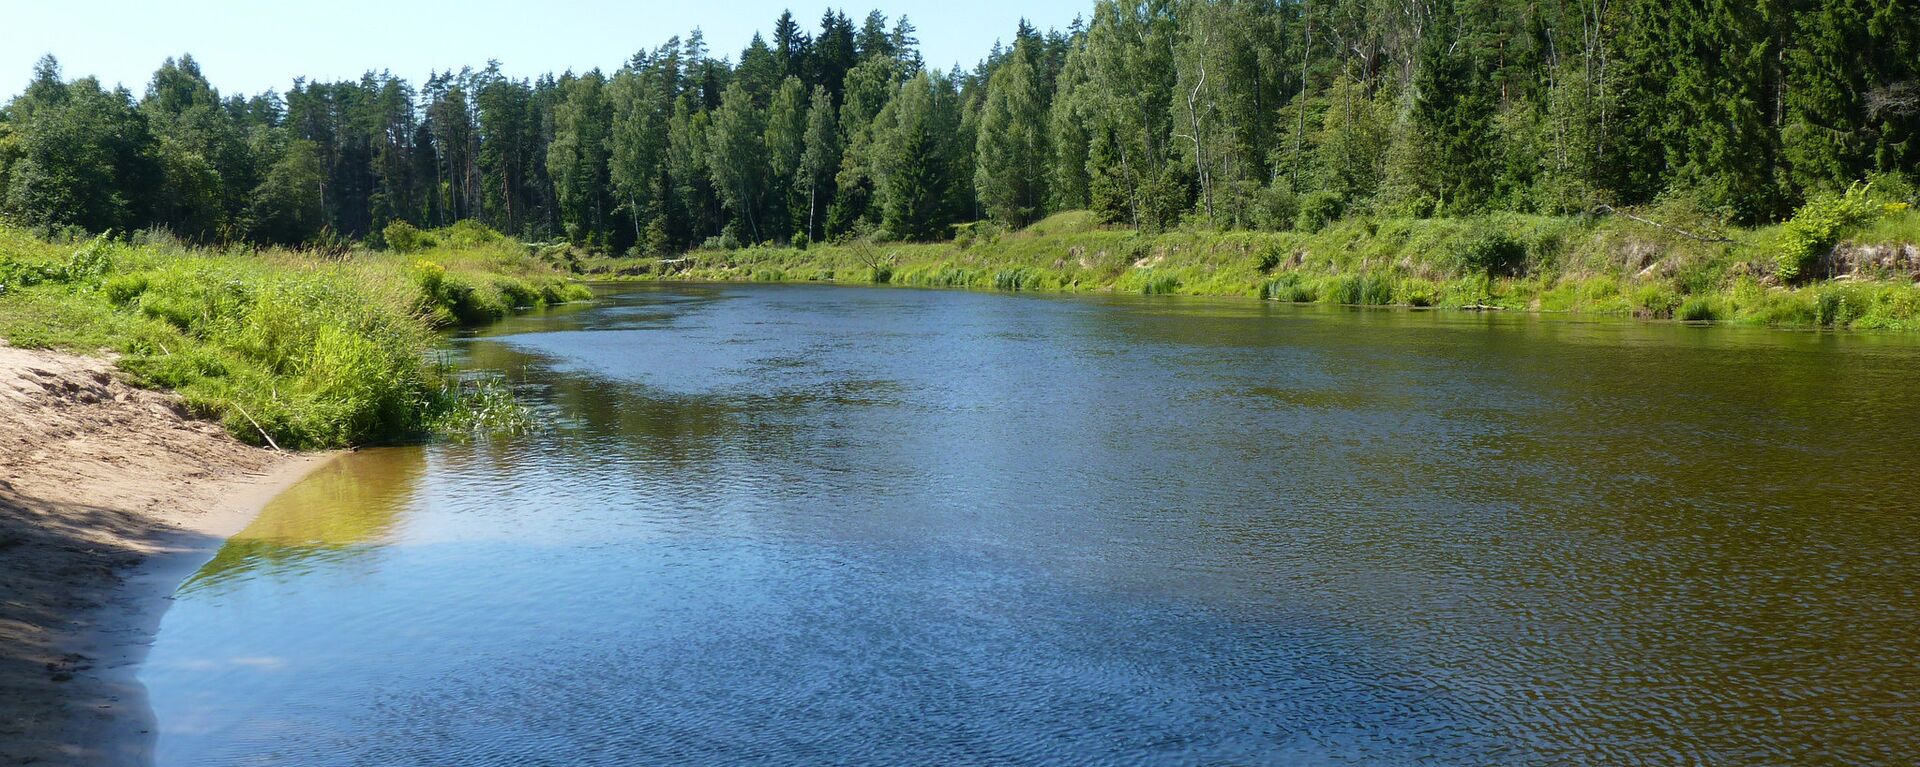 Река Гауя - Sputnik Латвия, 1920, 21.08.2020